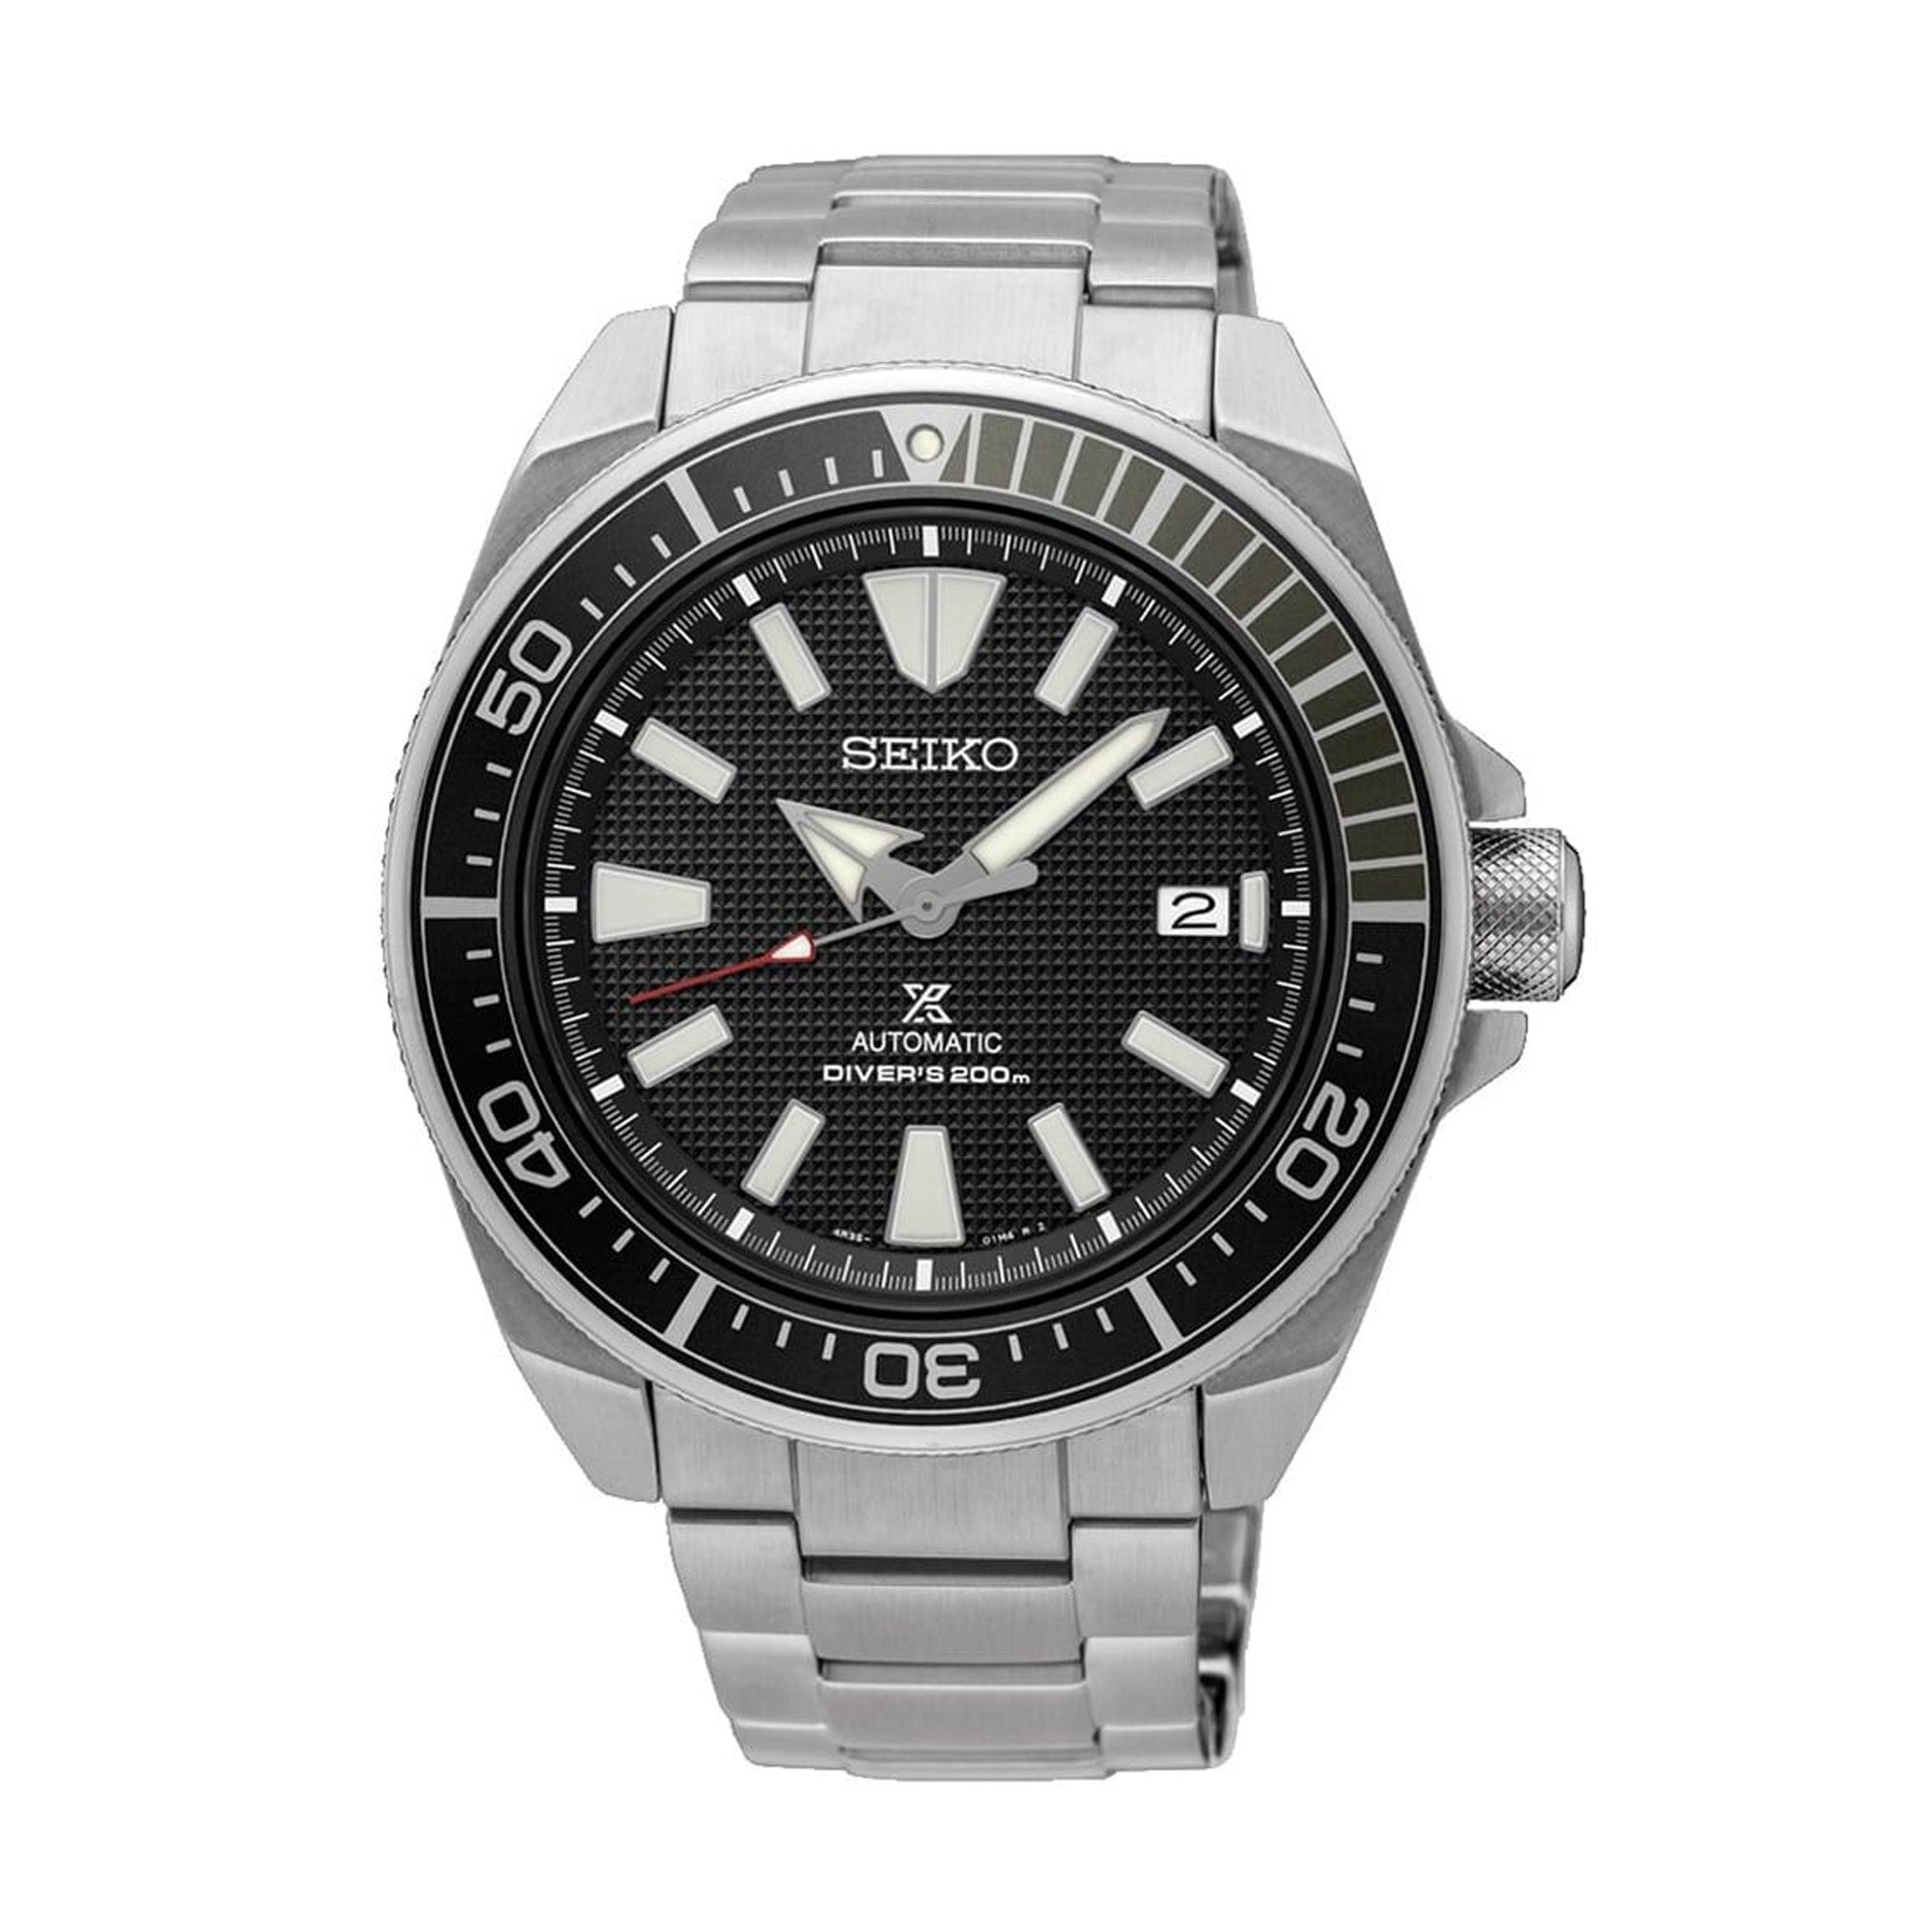 Seiko 4R35-01V0 Prospex Men's Watch - Silver